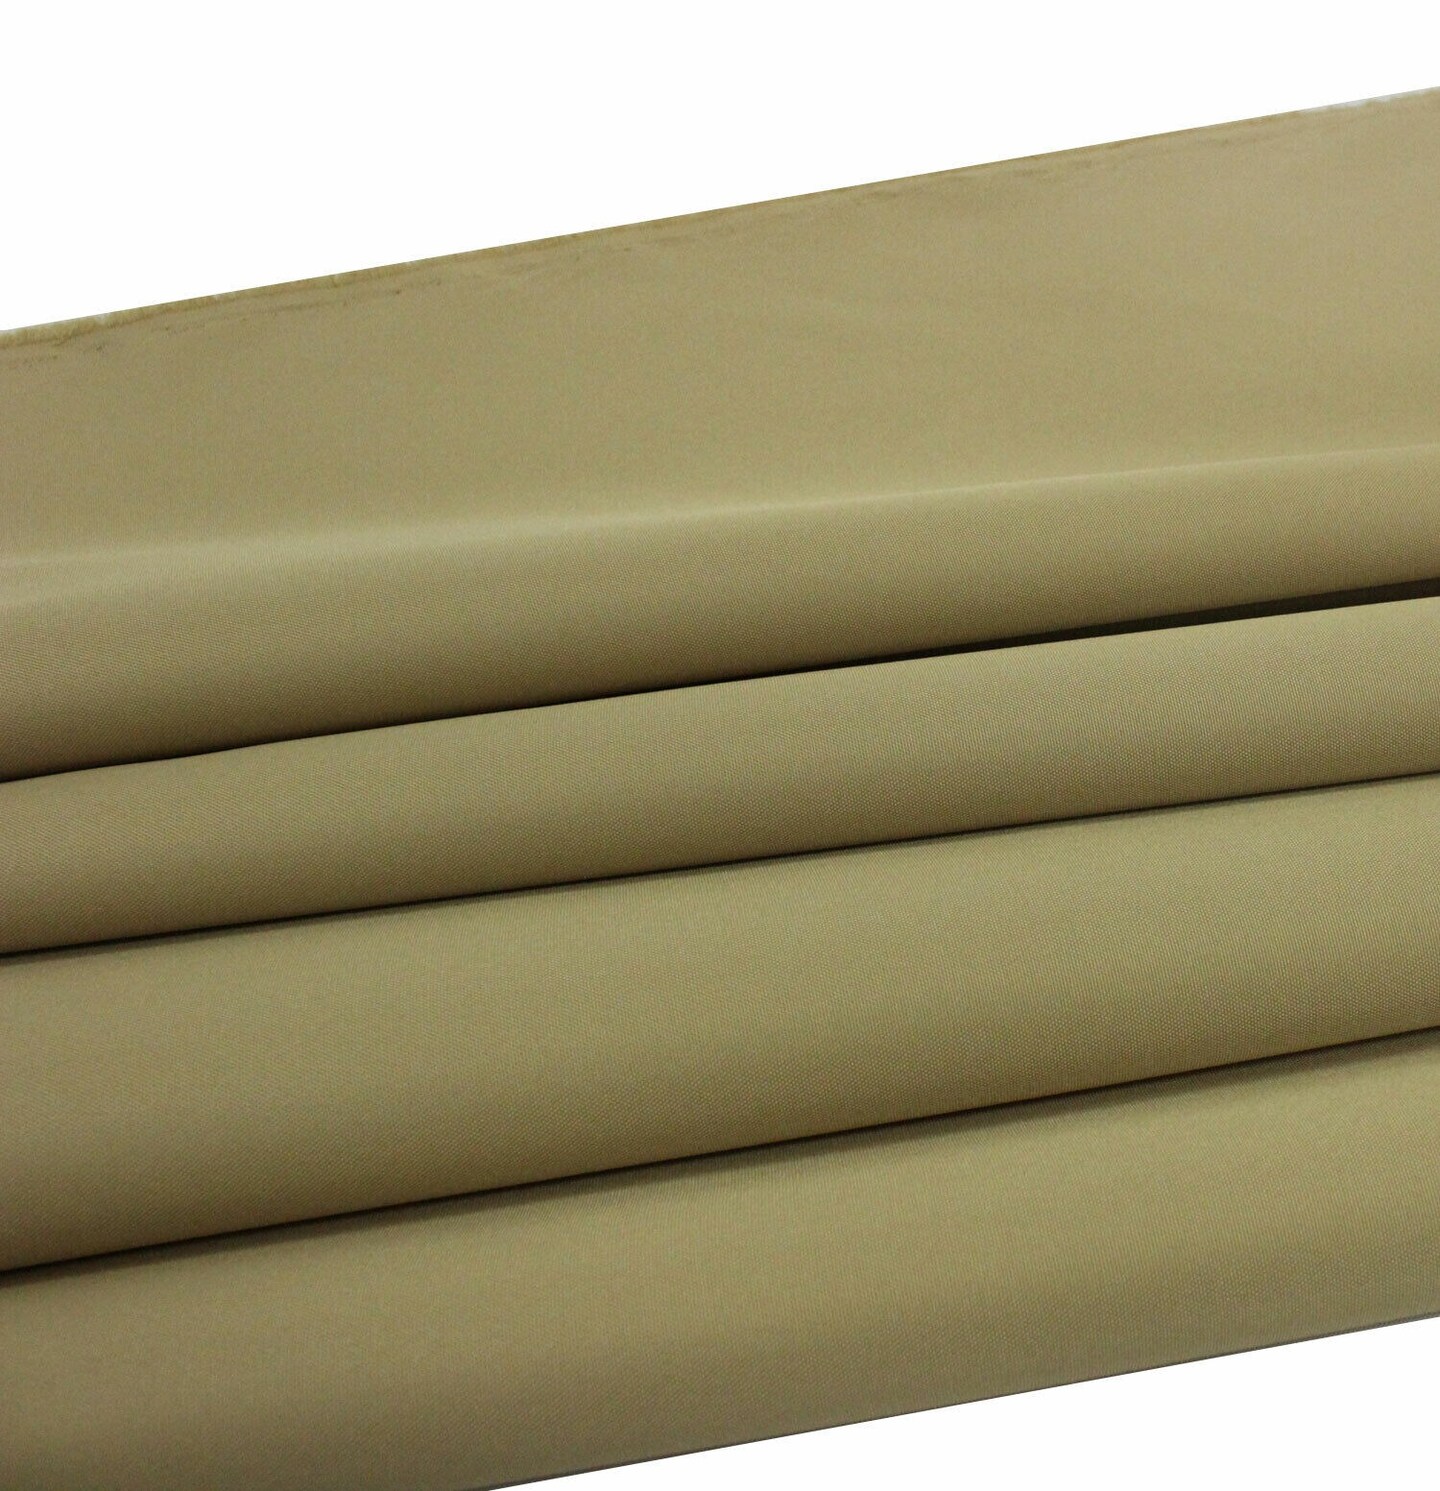 Heat-Blocking, Glare-Reducing Marine Waterproof Canvas Fabric